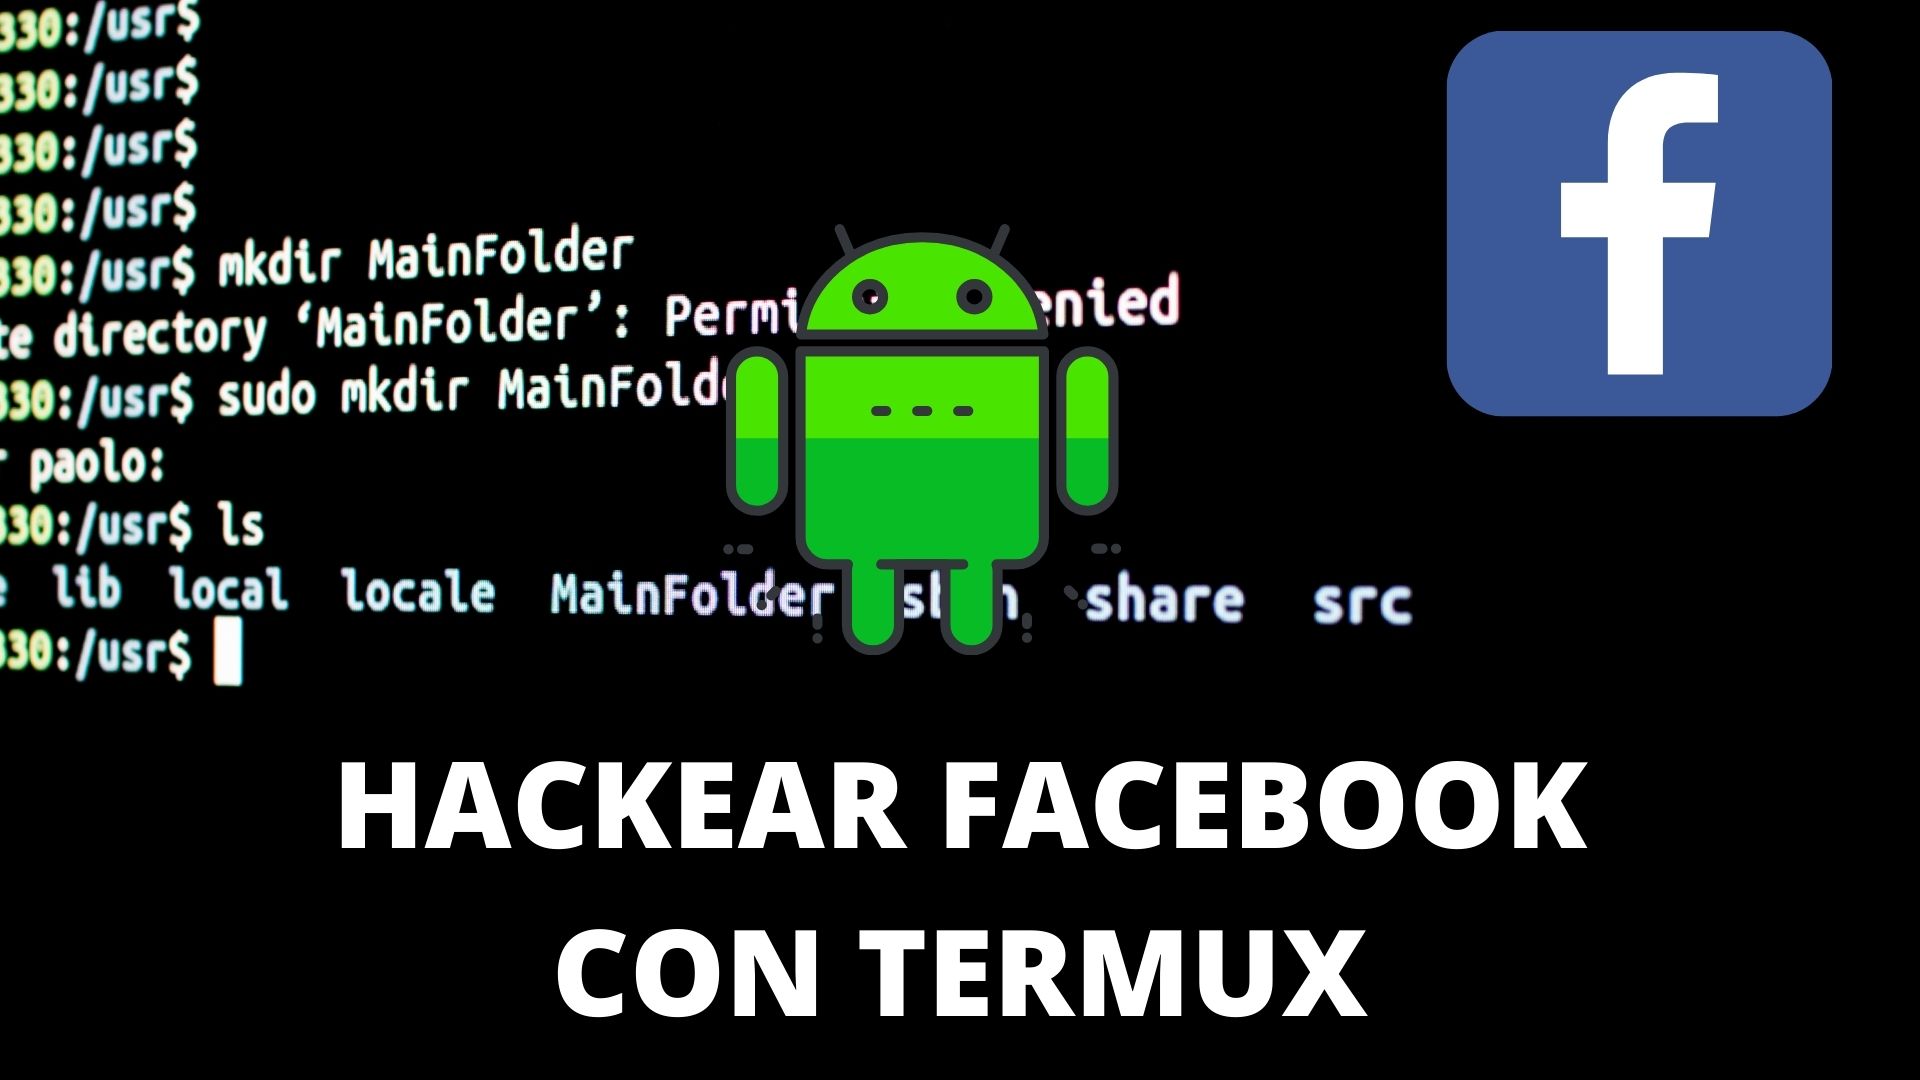 comandos para hackear facebook con termux